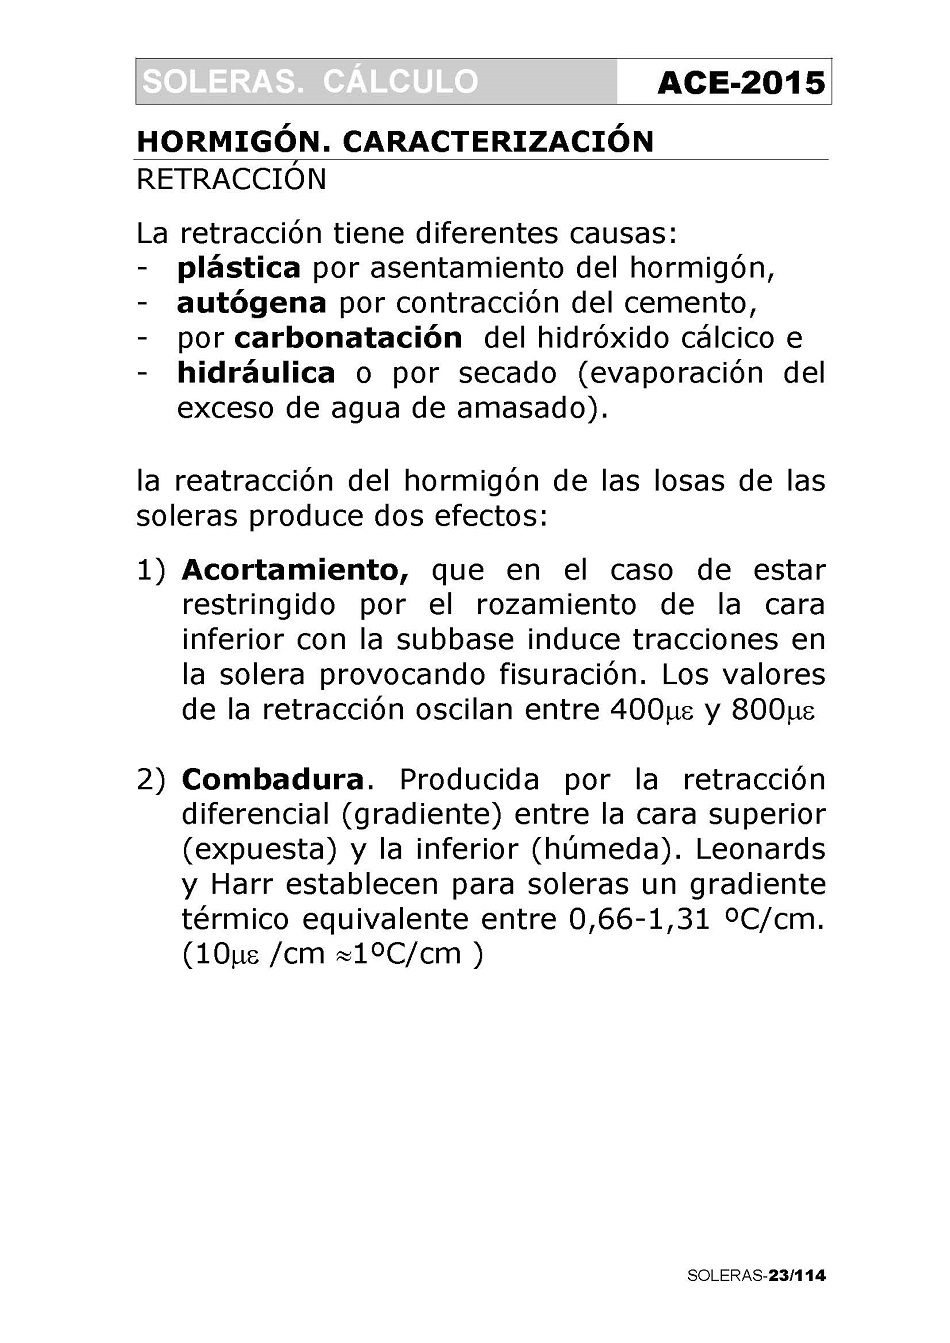 Cálculo de Soleras de Hormigón. Página 23